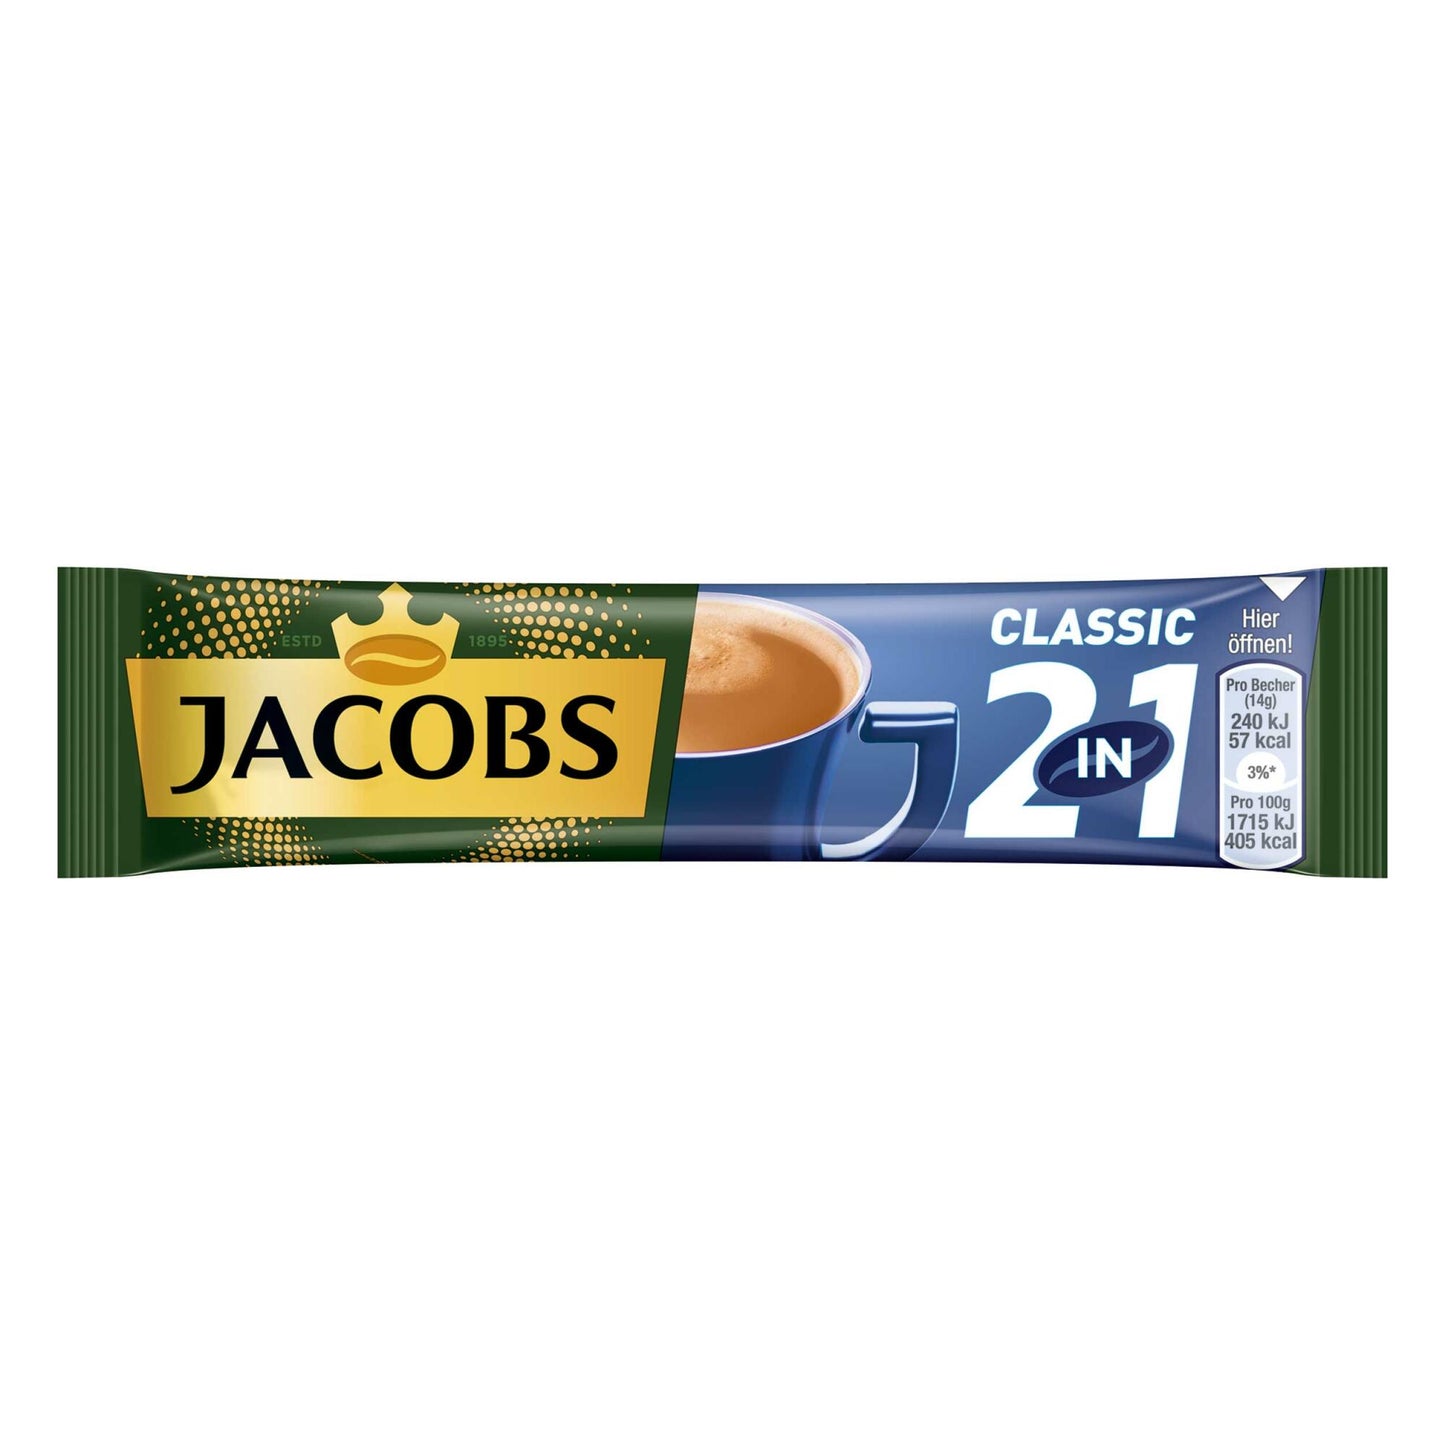 Jacobs 2in1 löslicher Kaffee, Instantkaffee, 10 Becherportionen